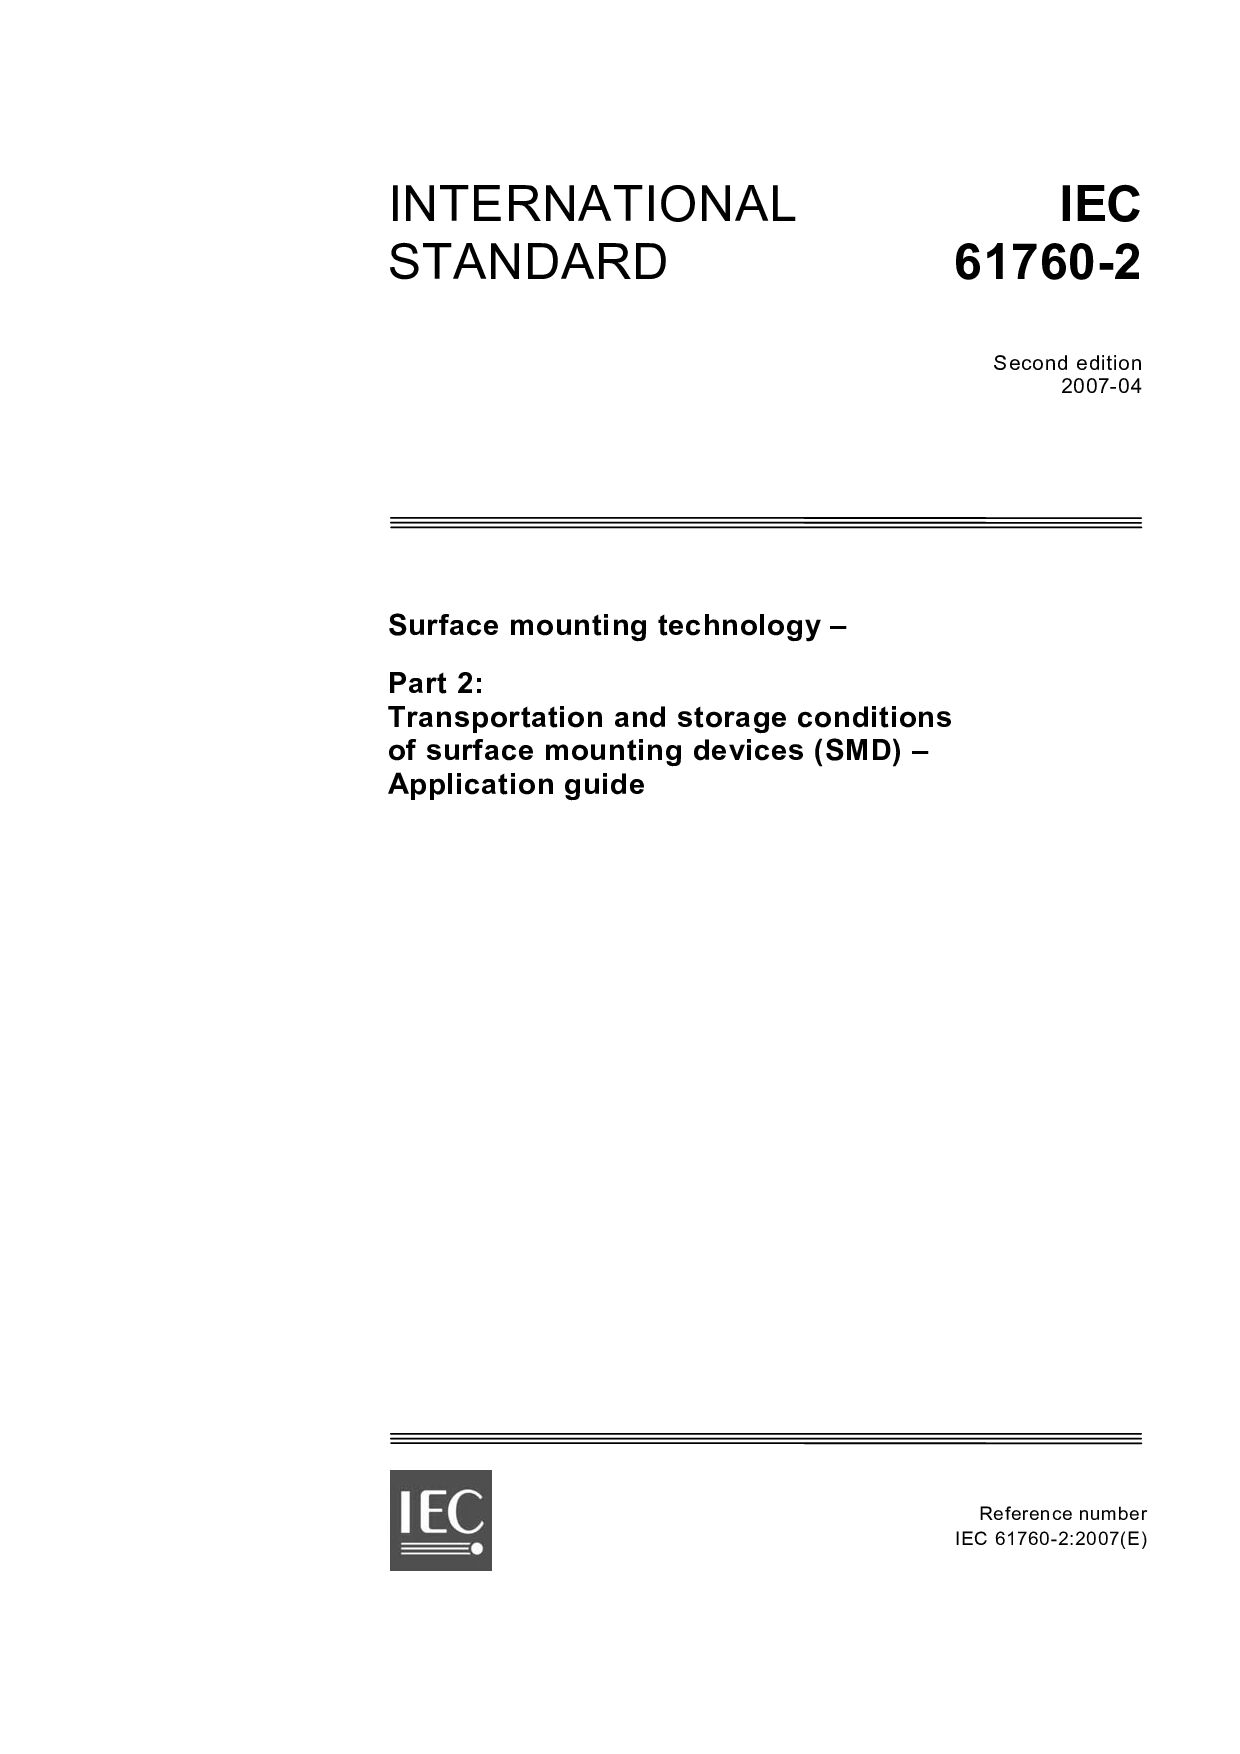 IEC 61760-2:2007